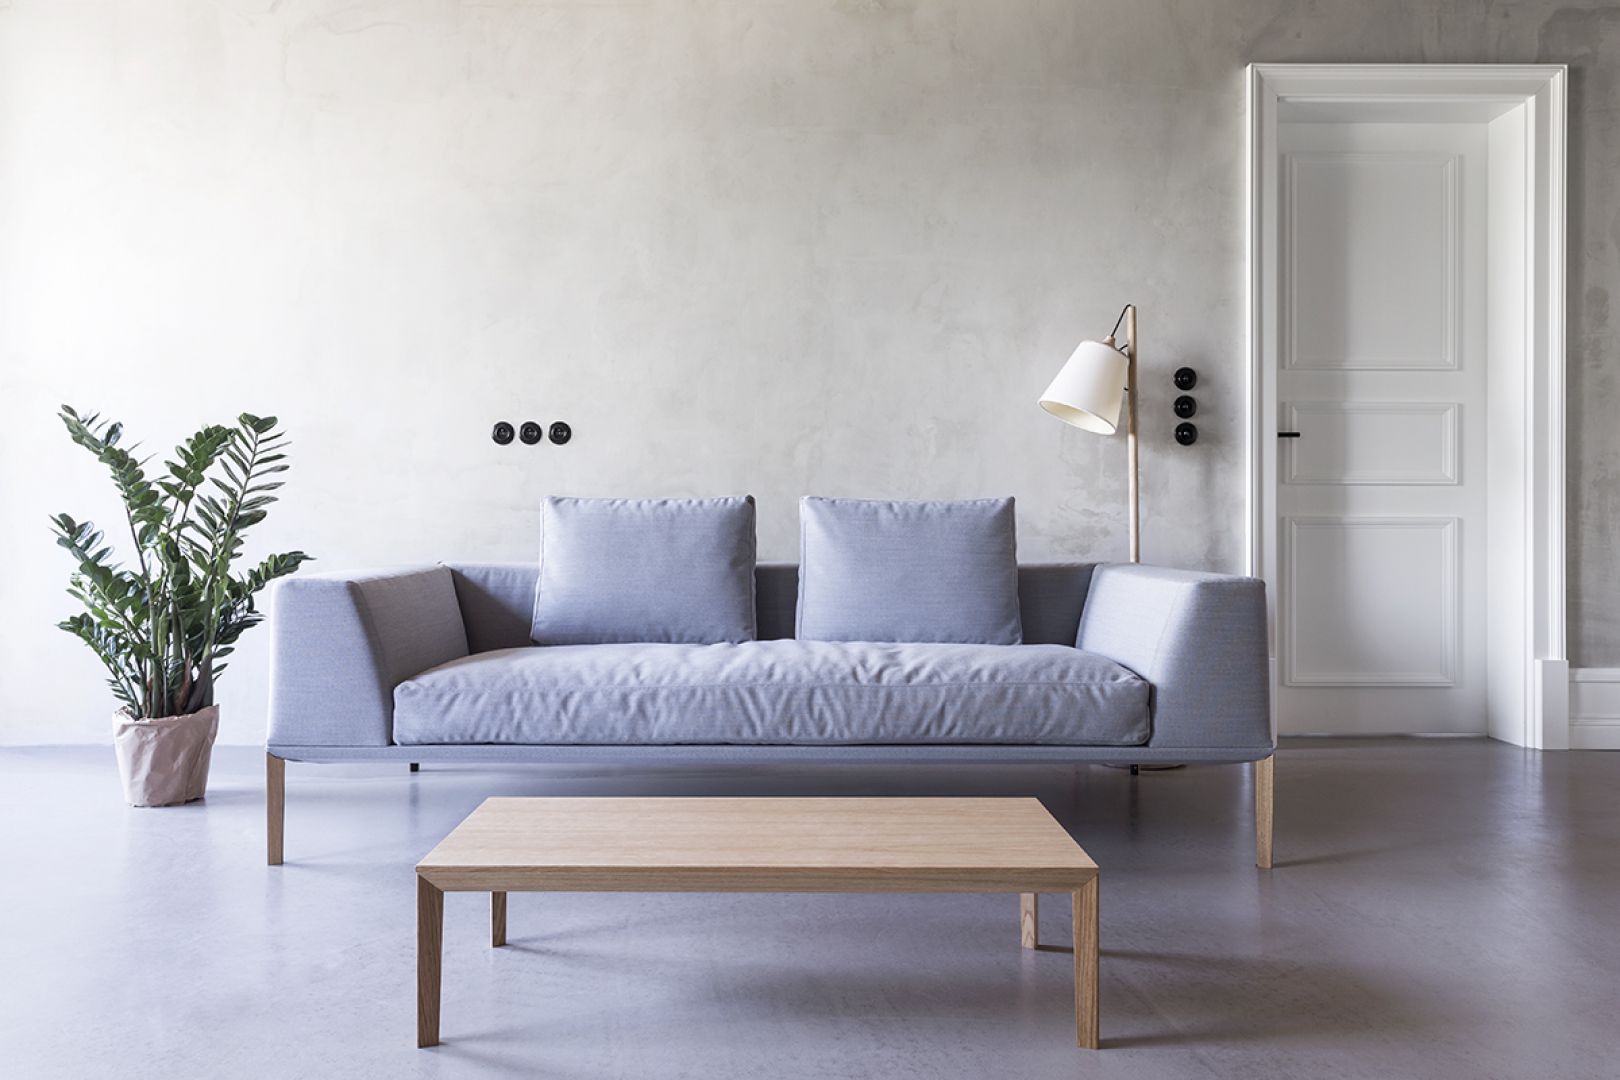 Sosa -to sofa zaprojektowana przez Piotra Kuchcińskiego dla firmy Noti. Ma niezwykle ciekawy kształt i nowoczesne wzornictwo. Fot. Noti